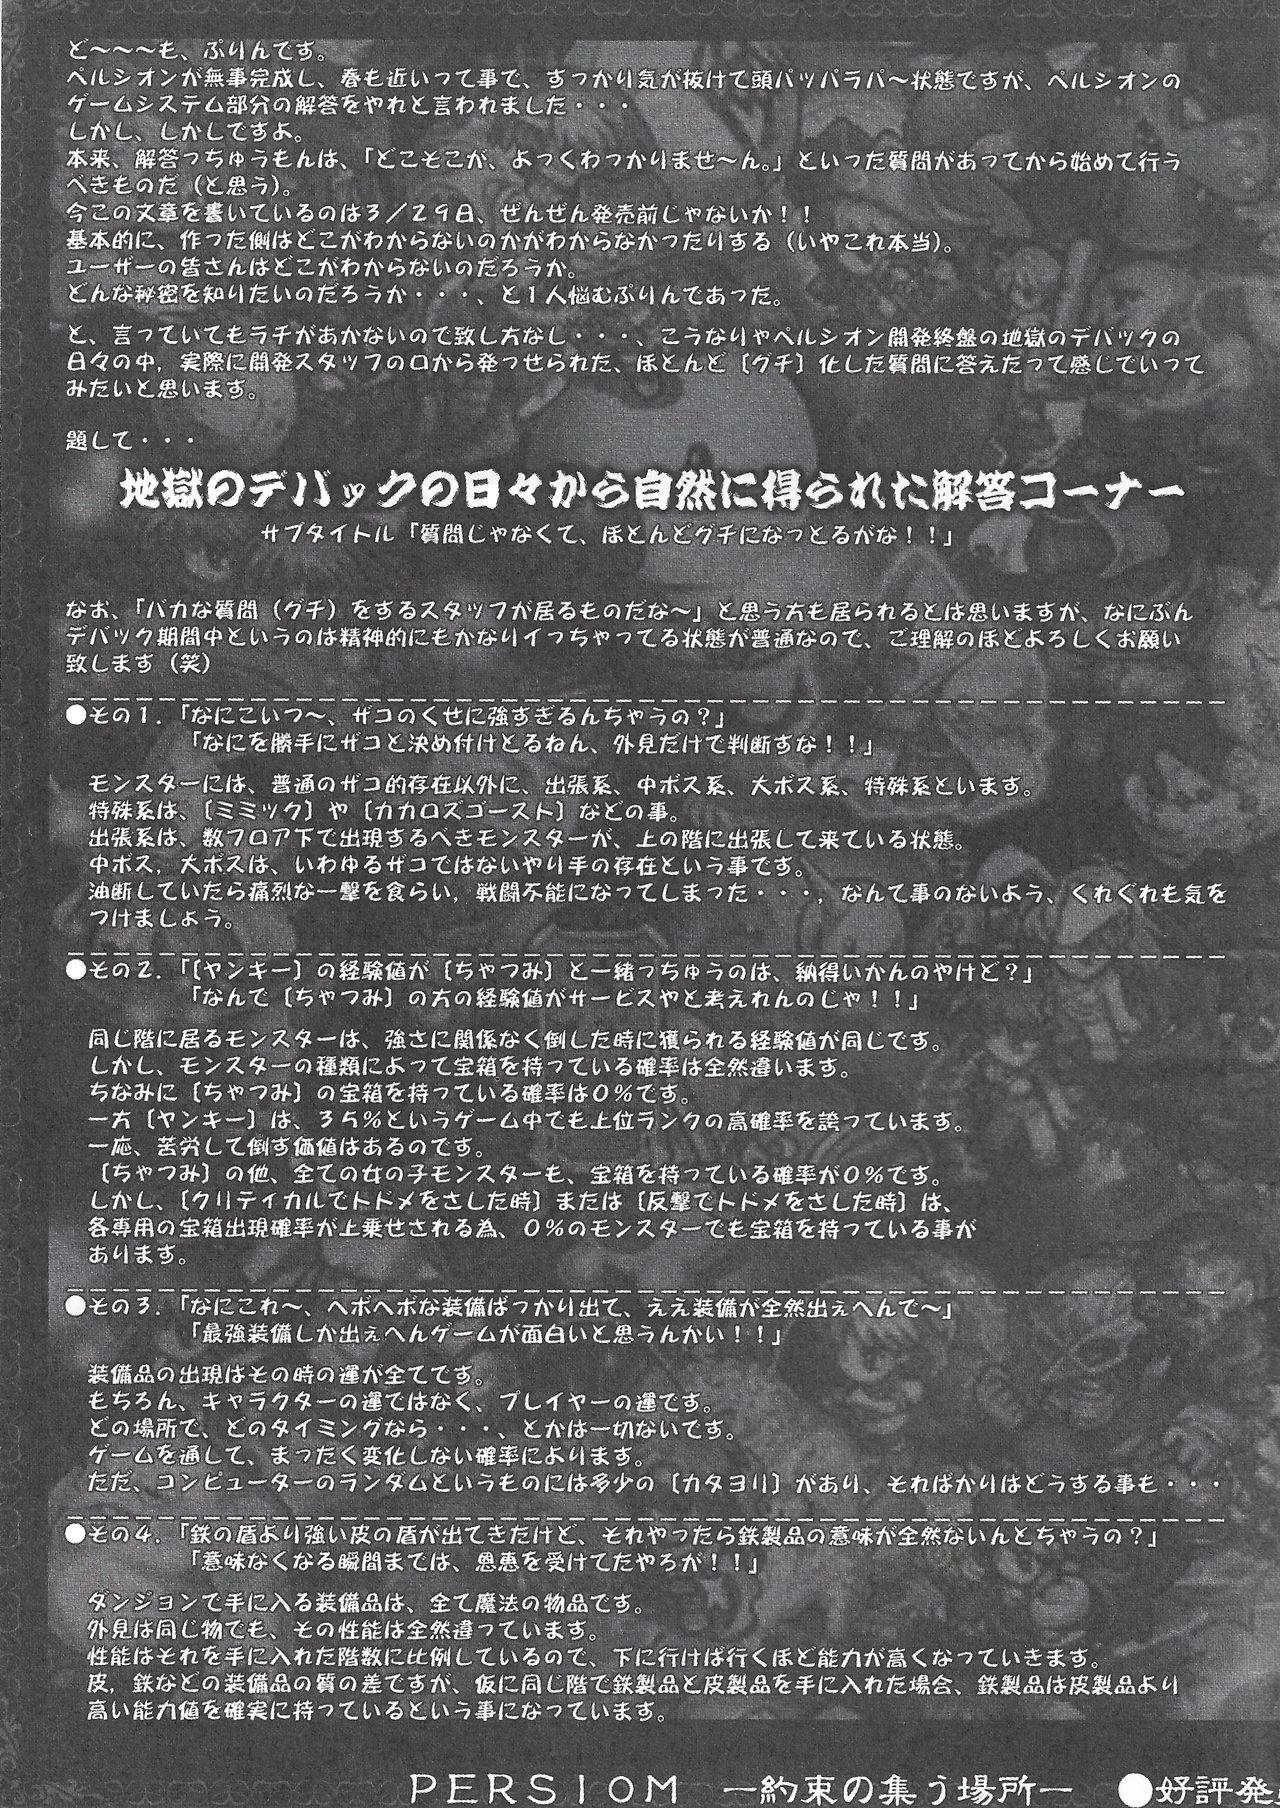 Arisu no Denchi Bakudan Vol. 11 1